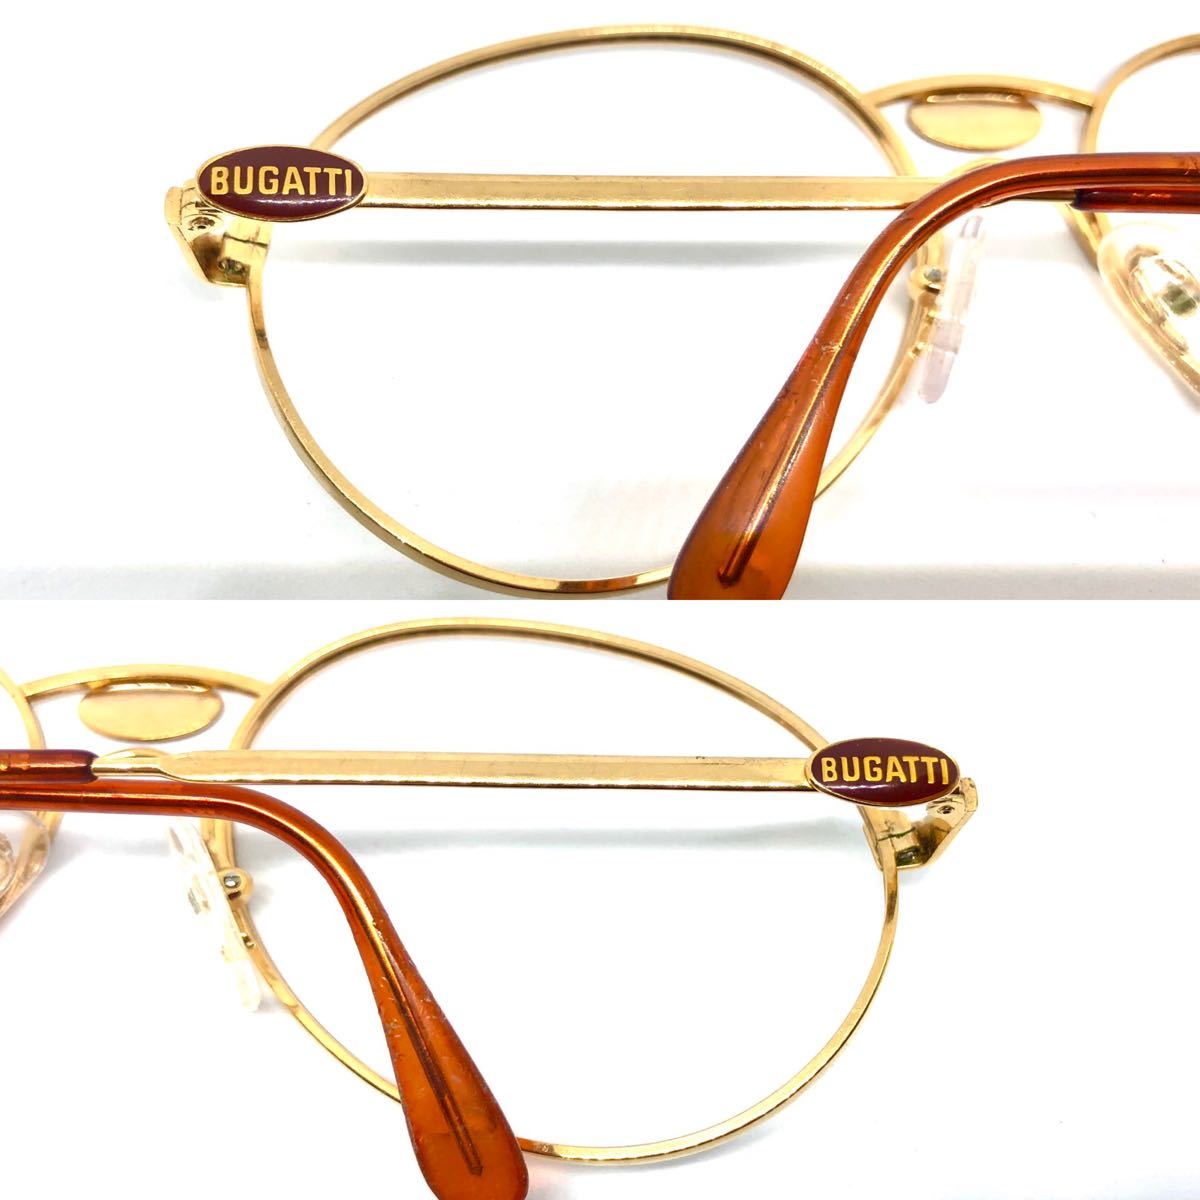 BUGGATTI ブガッティ サングラス 眼鏡 メガネ フレーム ビンテージ Vintage フランス製 高級_画像2